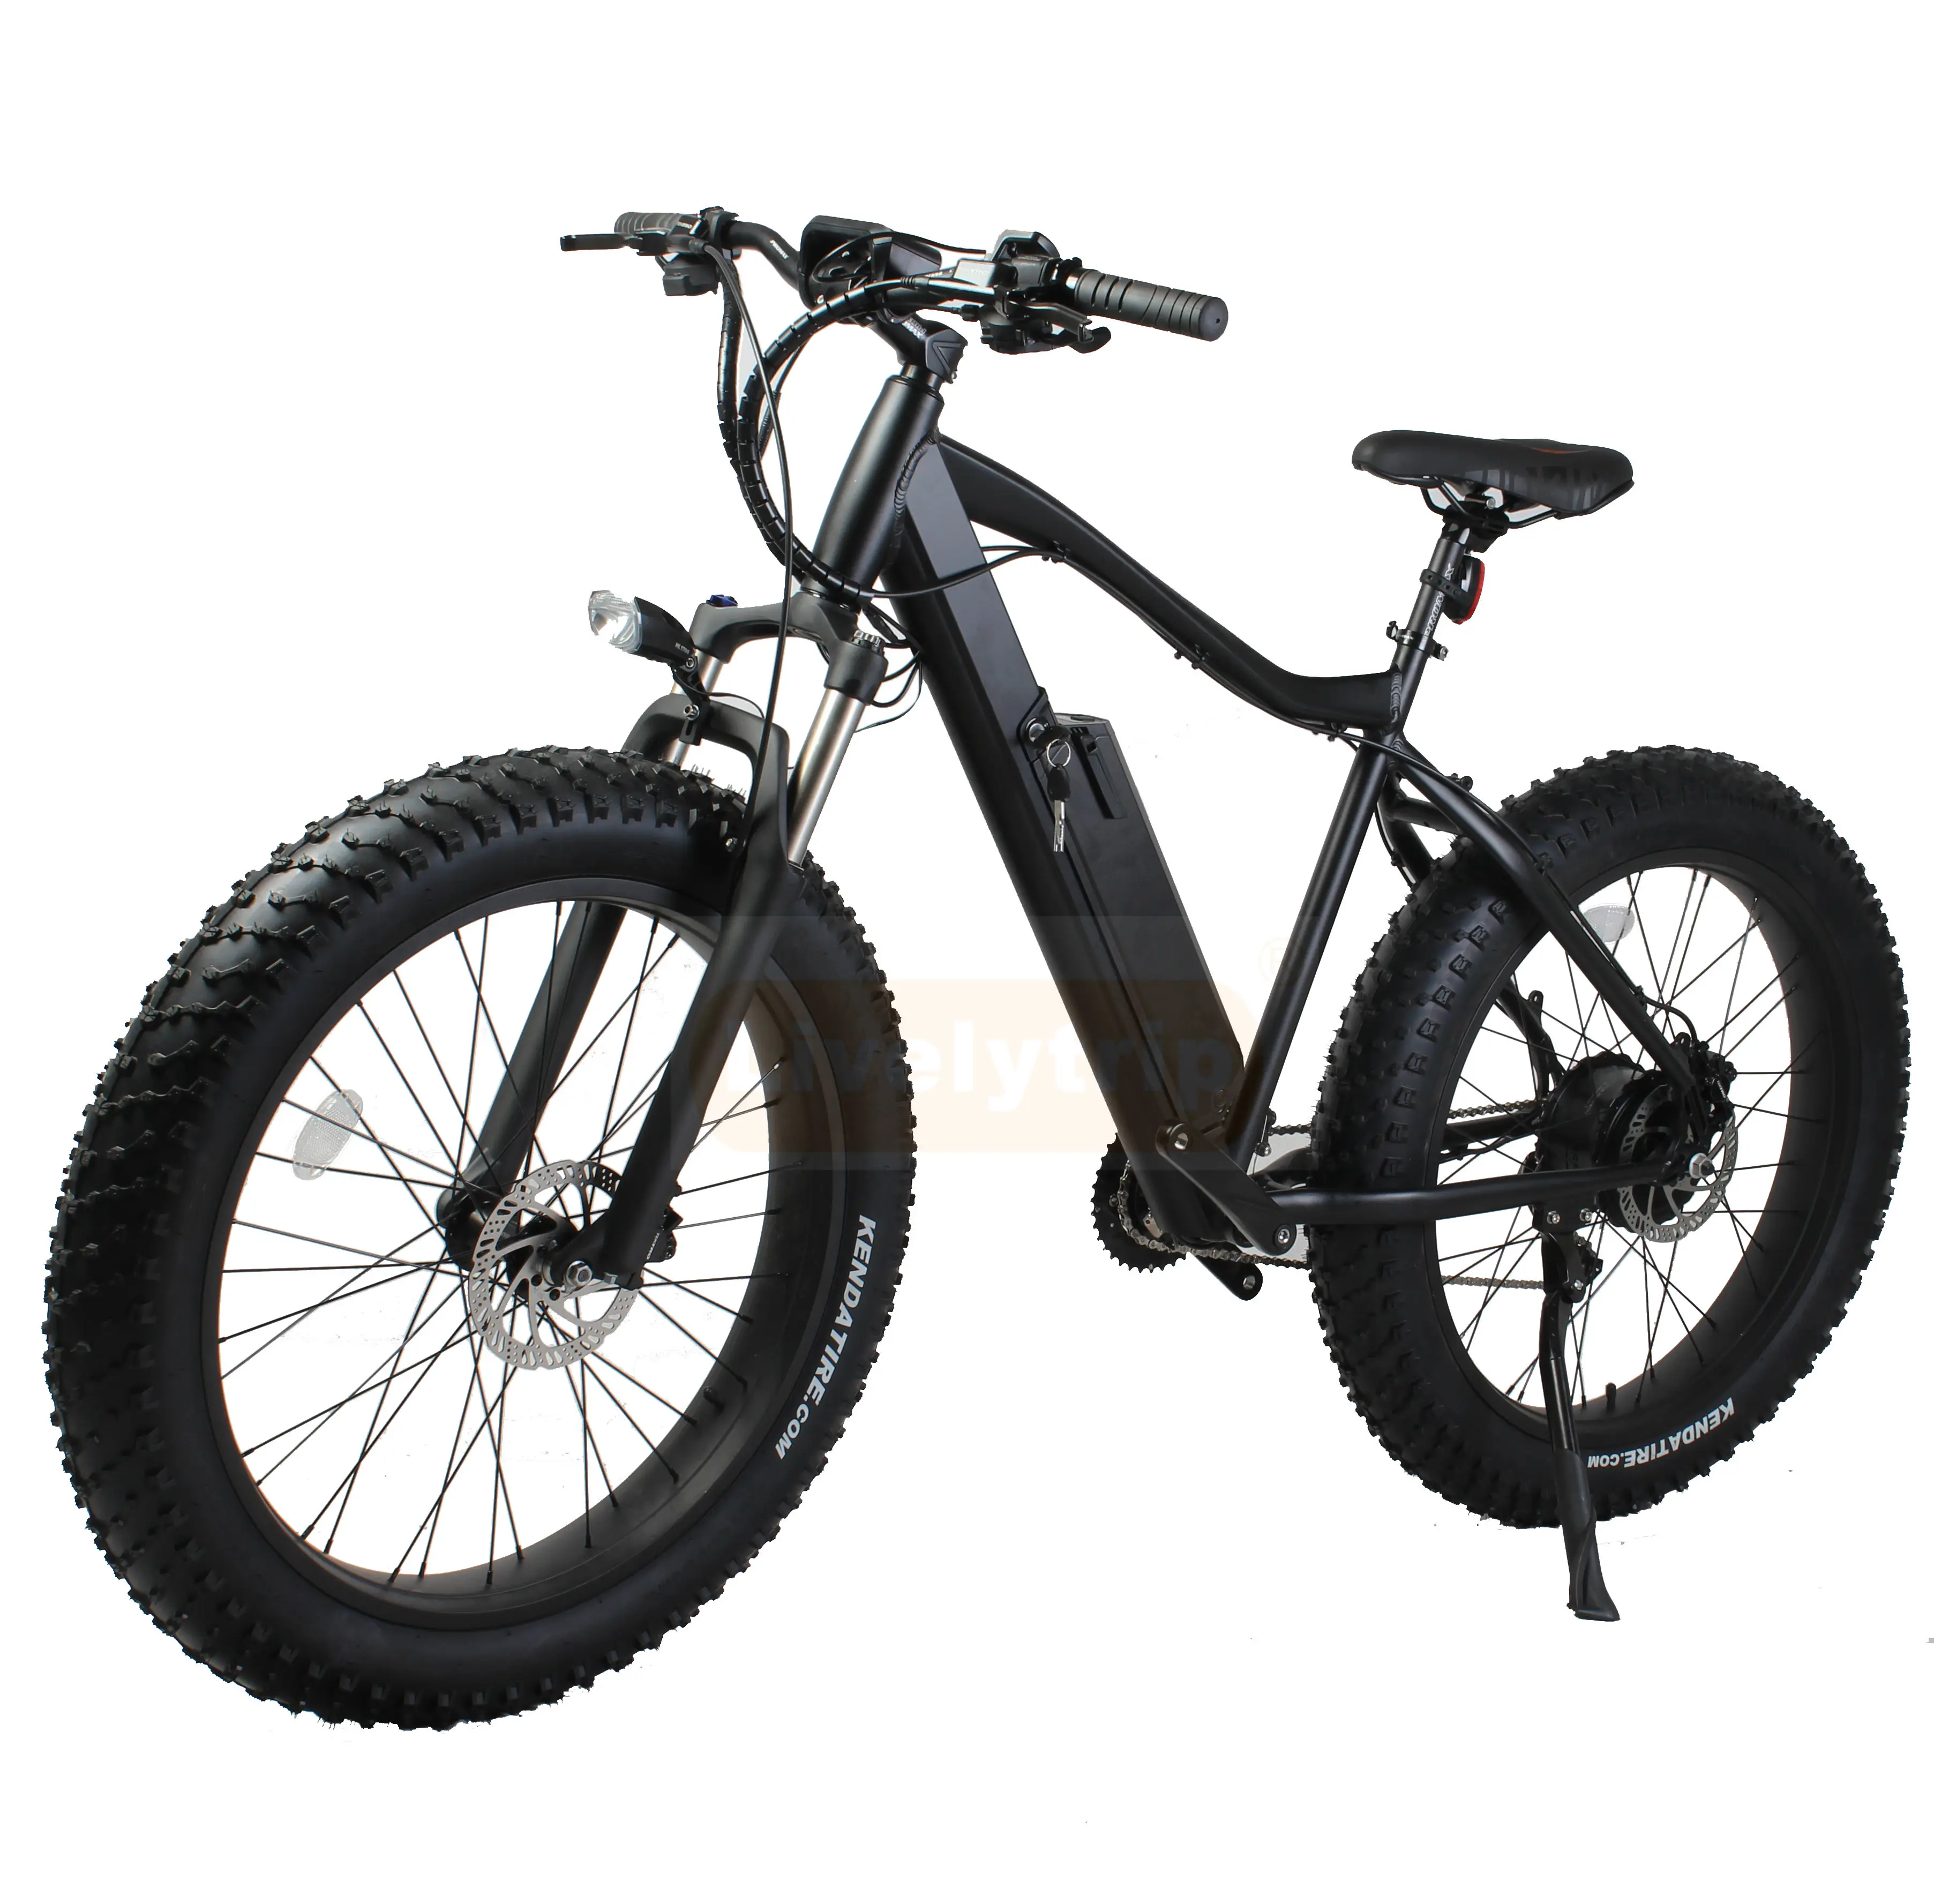 זול מחיר בבנגלדש 2019 לכלוך שומן צמיג אופניים חשמליים/אופנוע